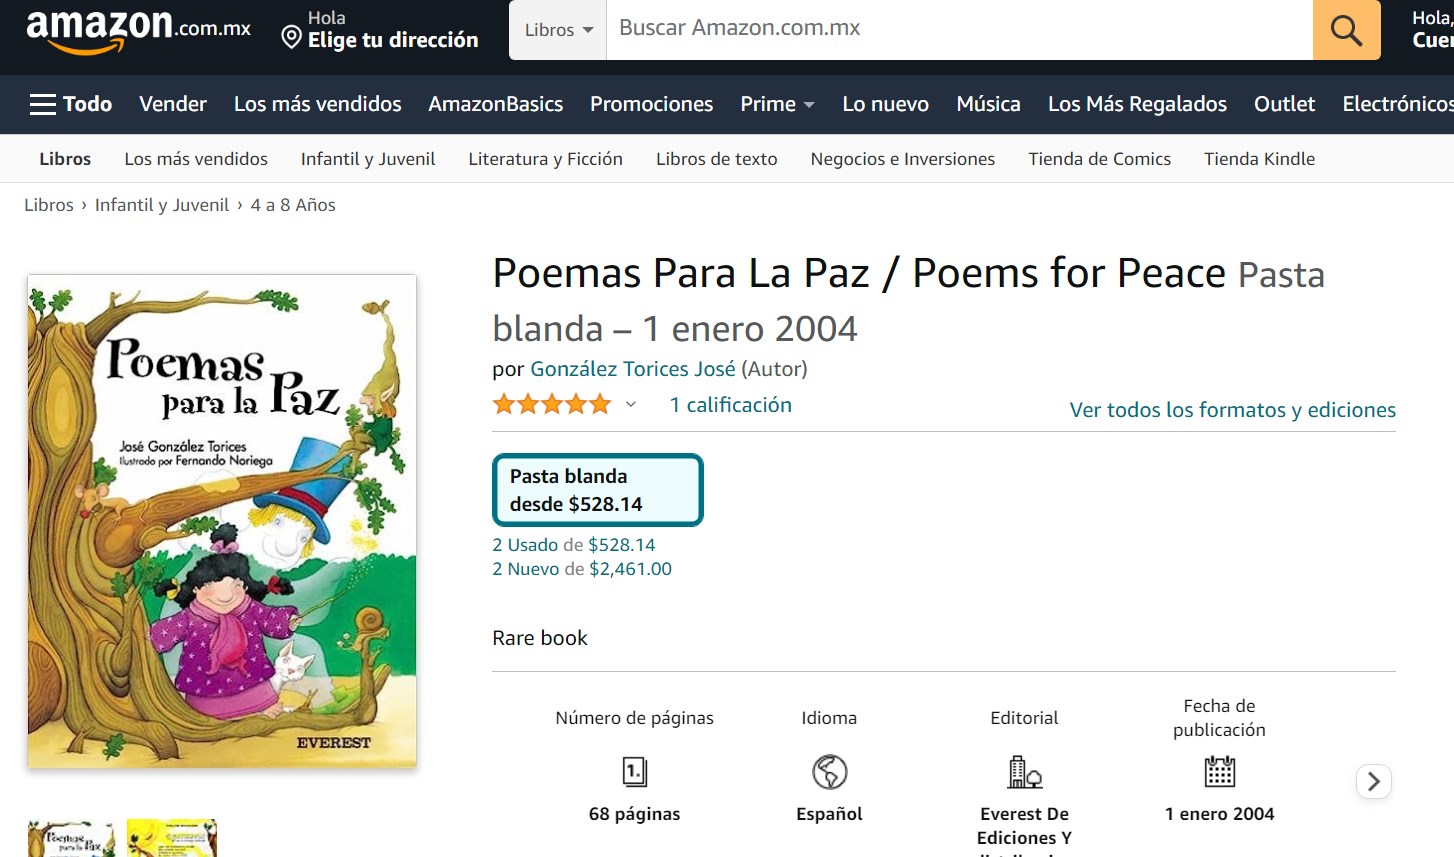 Libro: Poemas Para La Paz por González Torices José